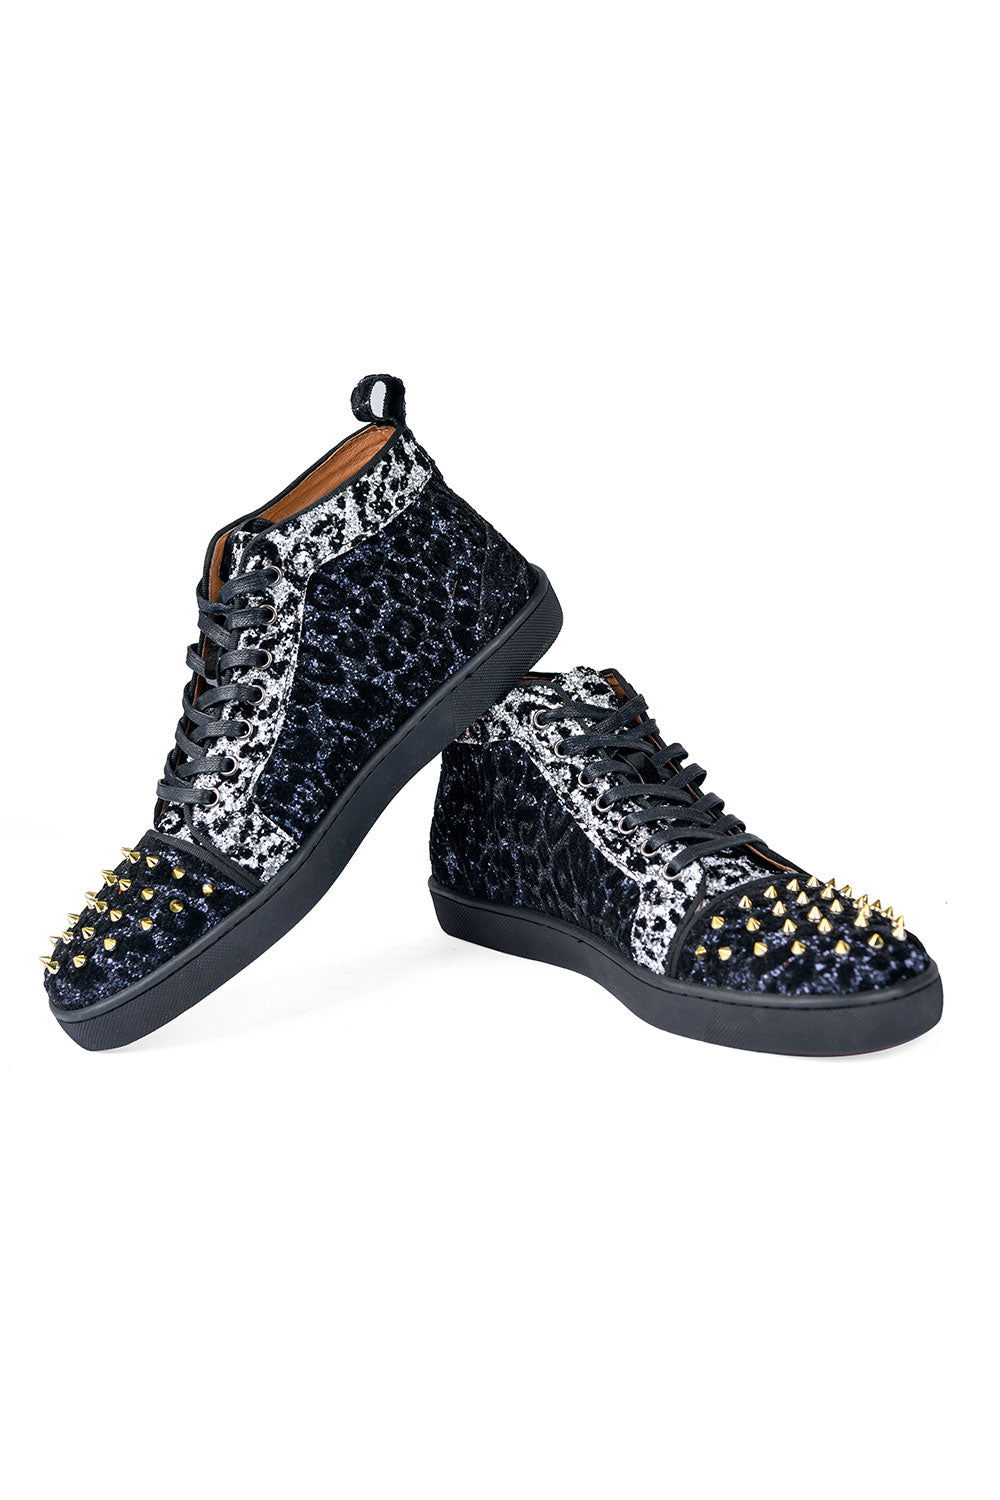 Barabas men's luxury leopard rhinestone gold spikes sneakers SH702